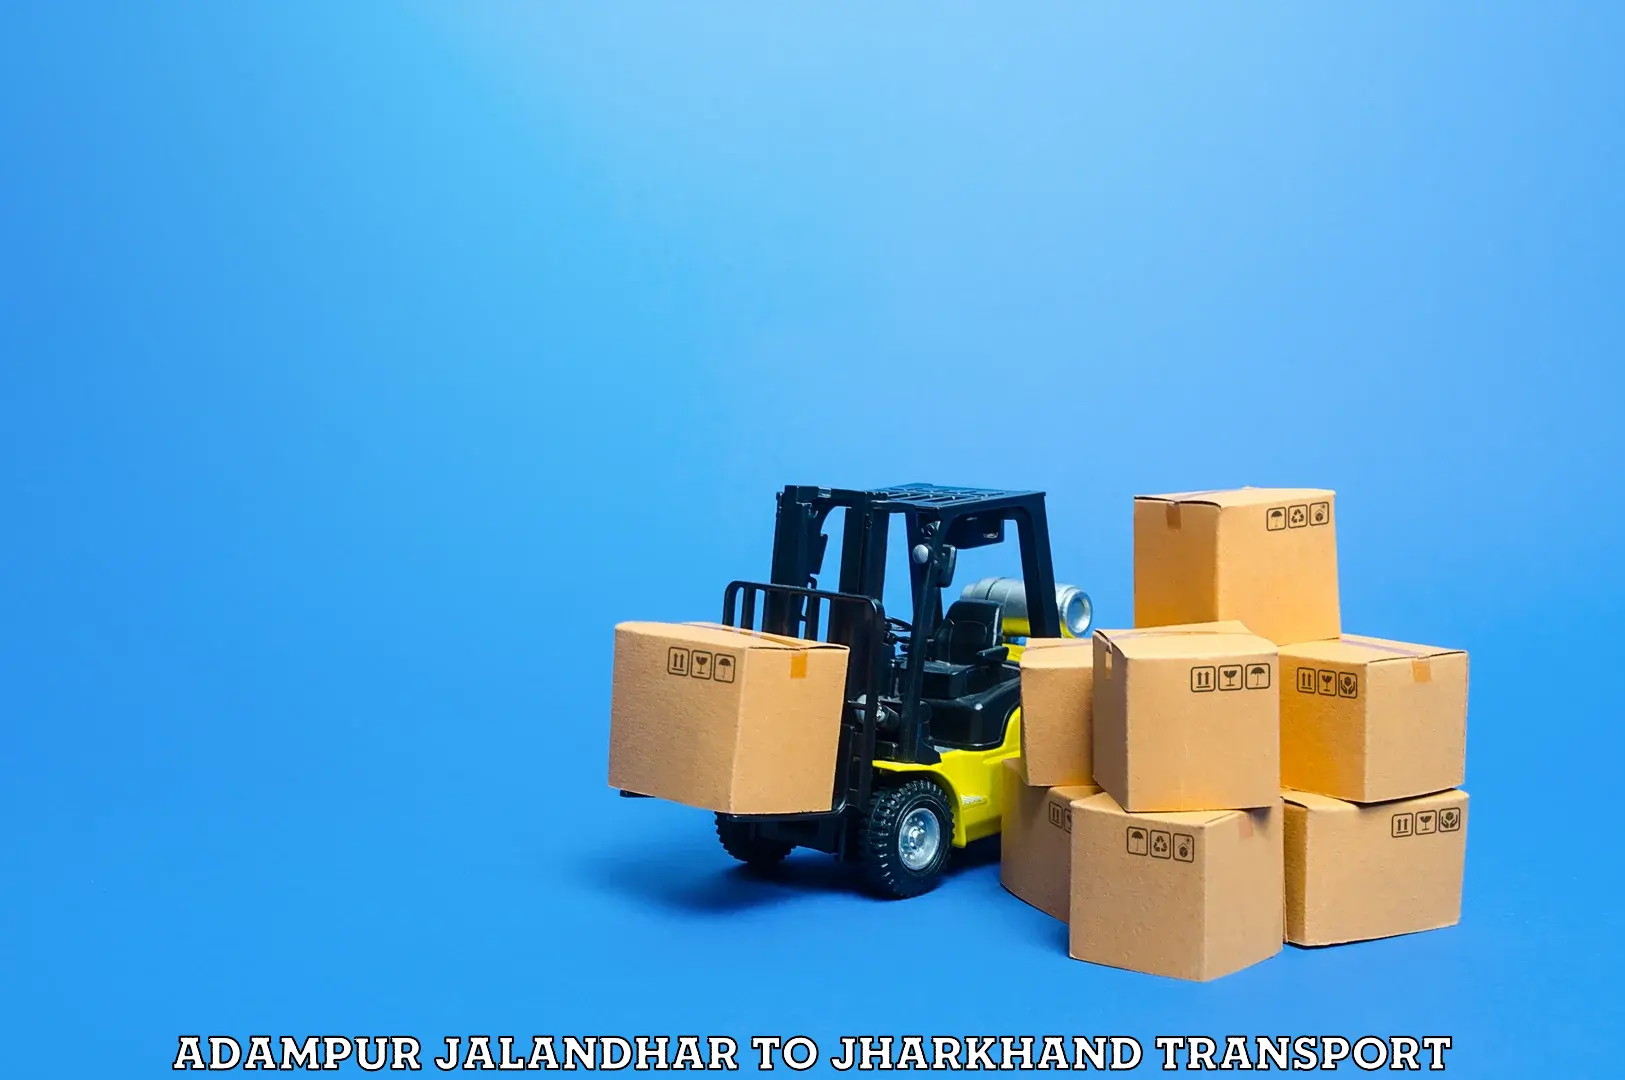 Lorry transport service Adampur Jalandhar to Nirsa